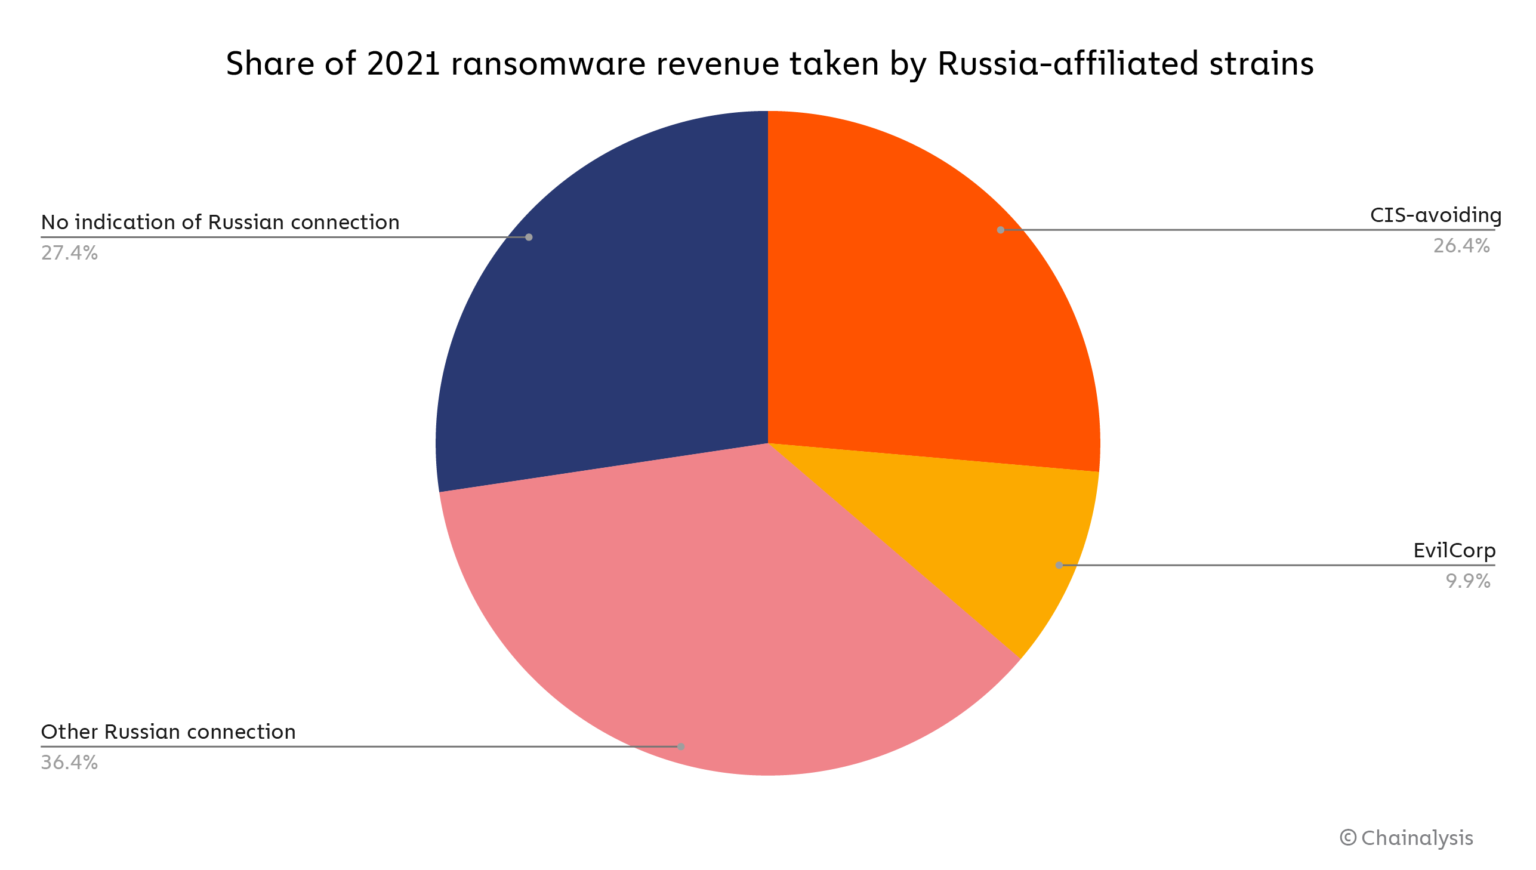 Part des revenus des ransomwares affiliés avec la Russie